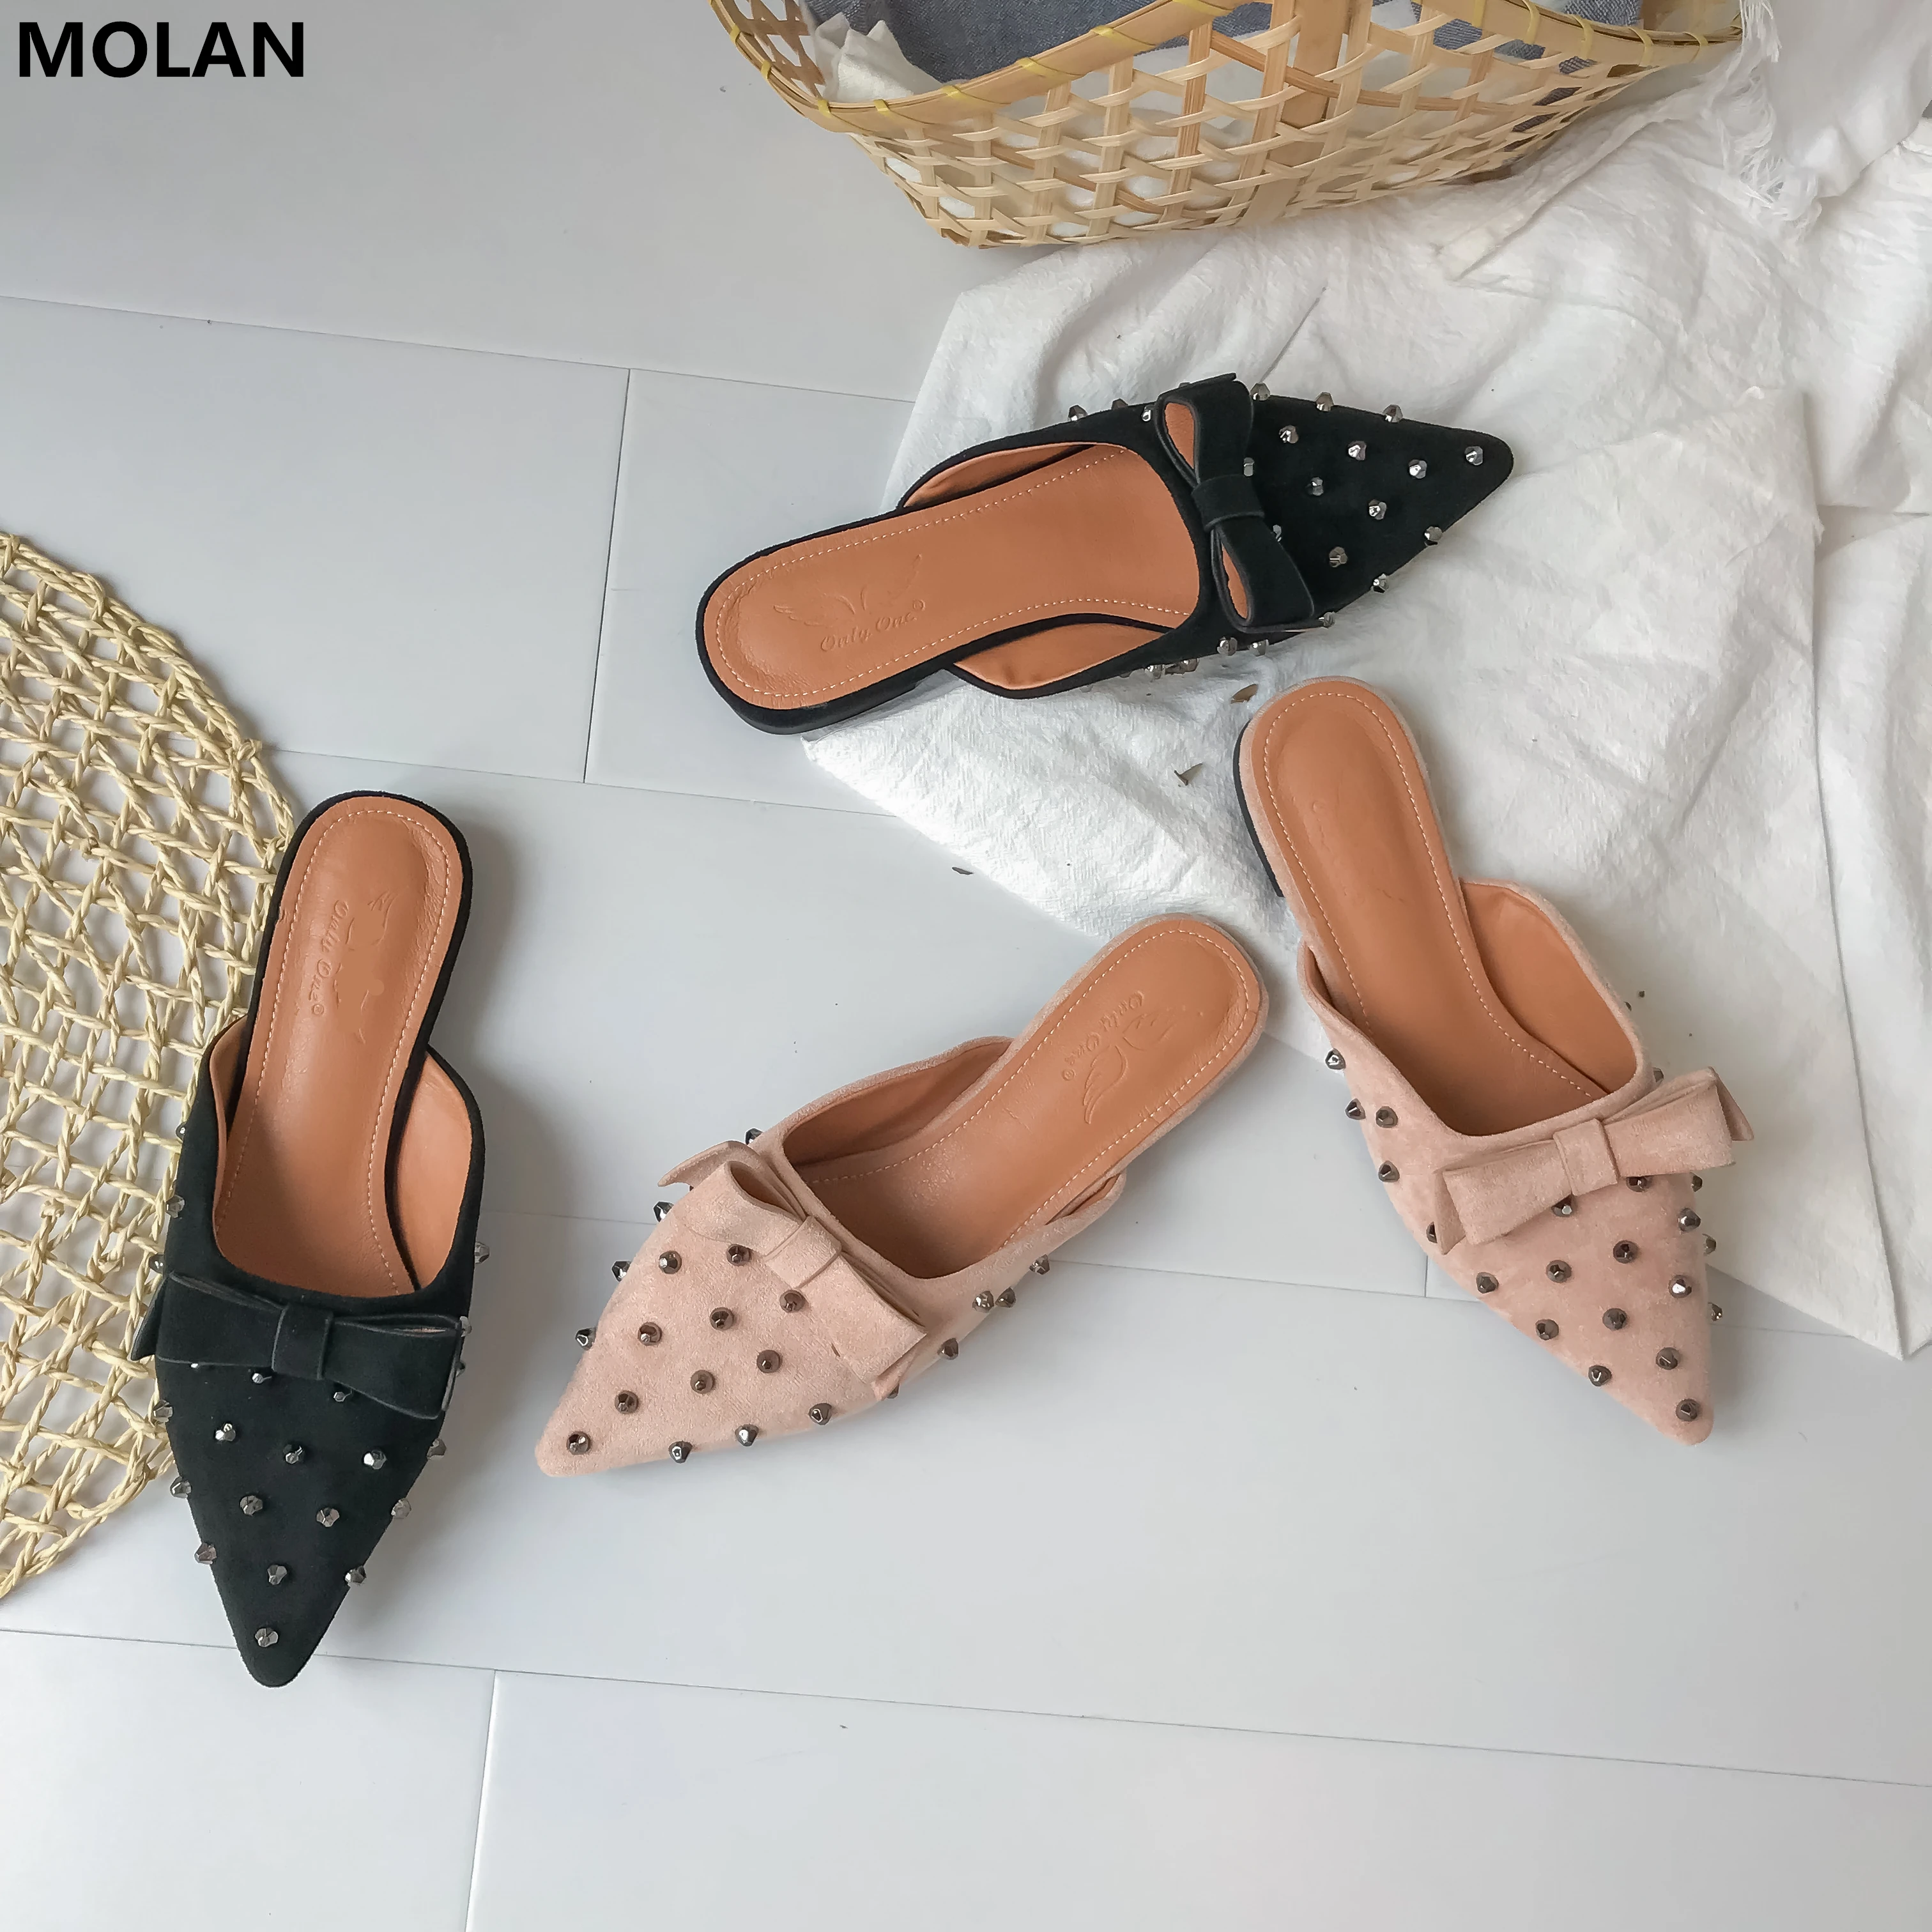 MOLAN/брендовая Дизайнерская обувь 2019 г.; Роскошная обувь с заклепками и бантом; женские пушистые тапочки на плоской подошве; Лоферы без